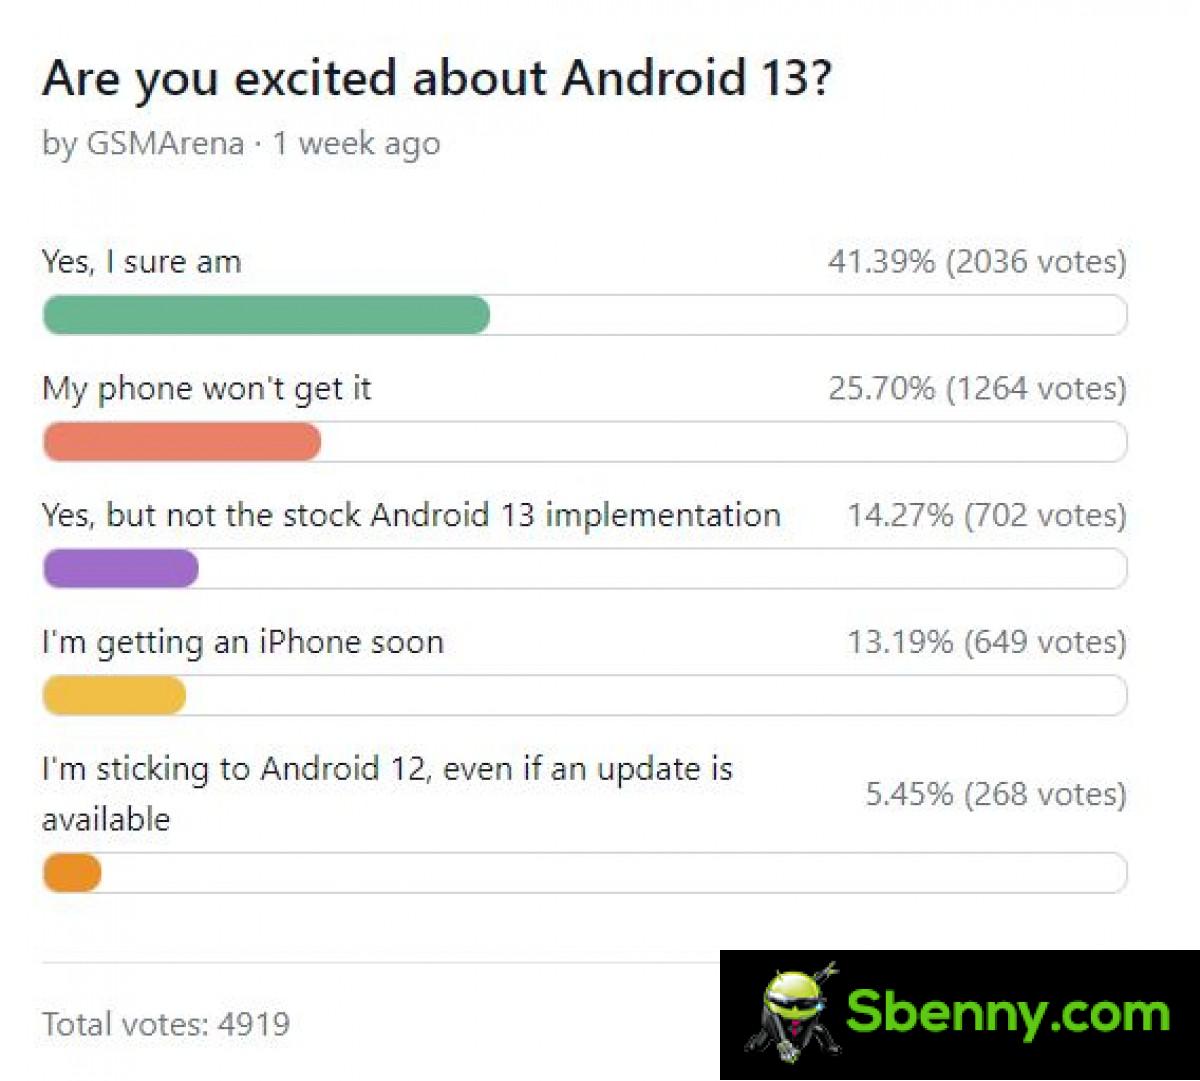 Wekelijkse enquêteresultaten: de meesten van jullie zijn enthousiast over Android 13, zolang je telefoon het maar krijgt